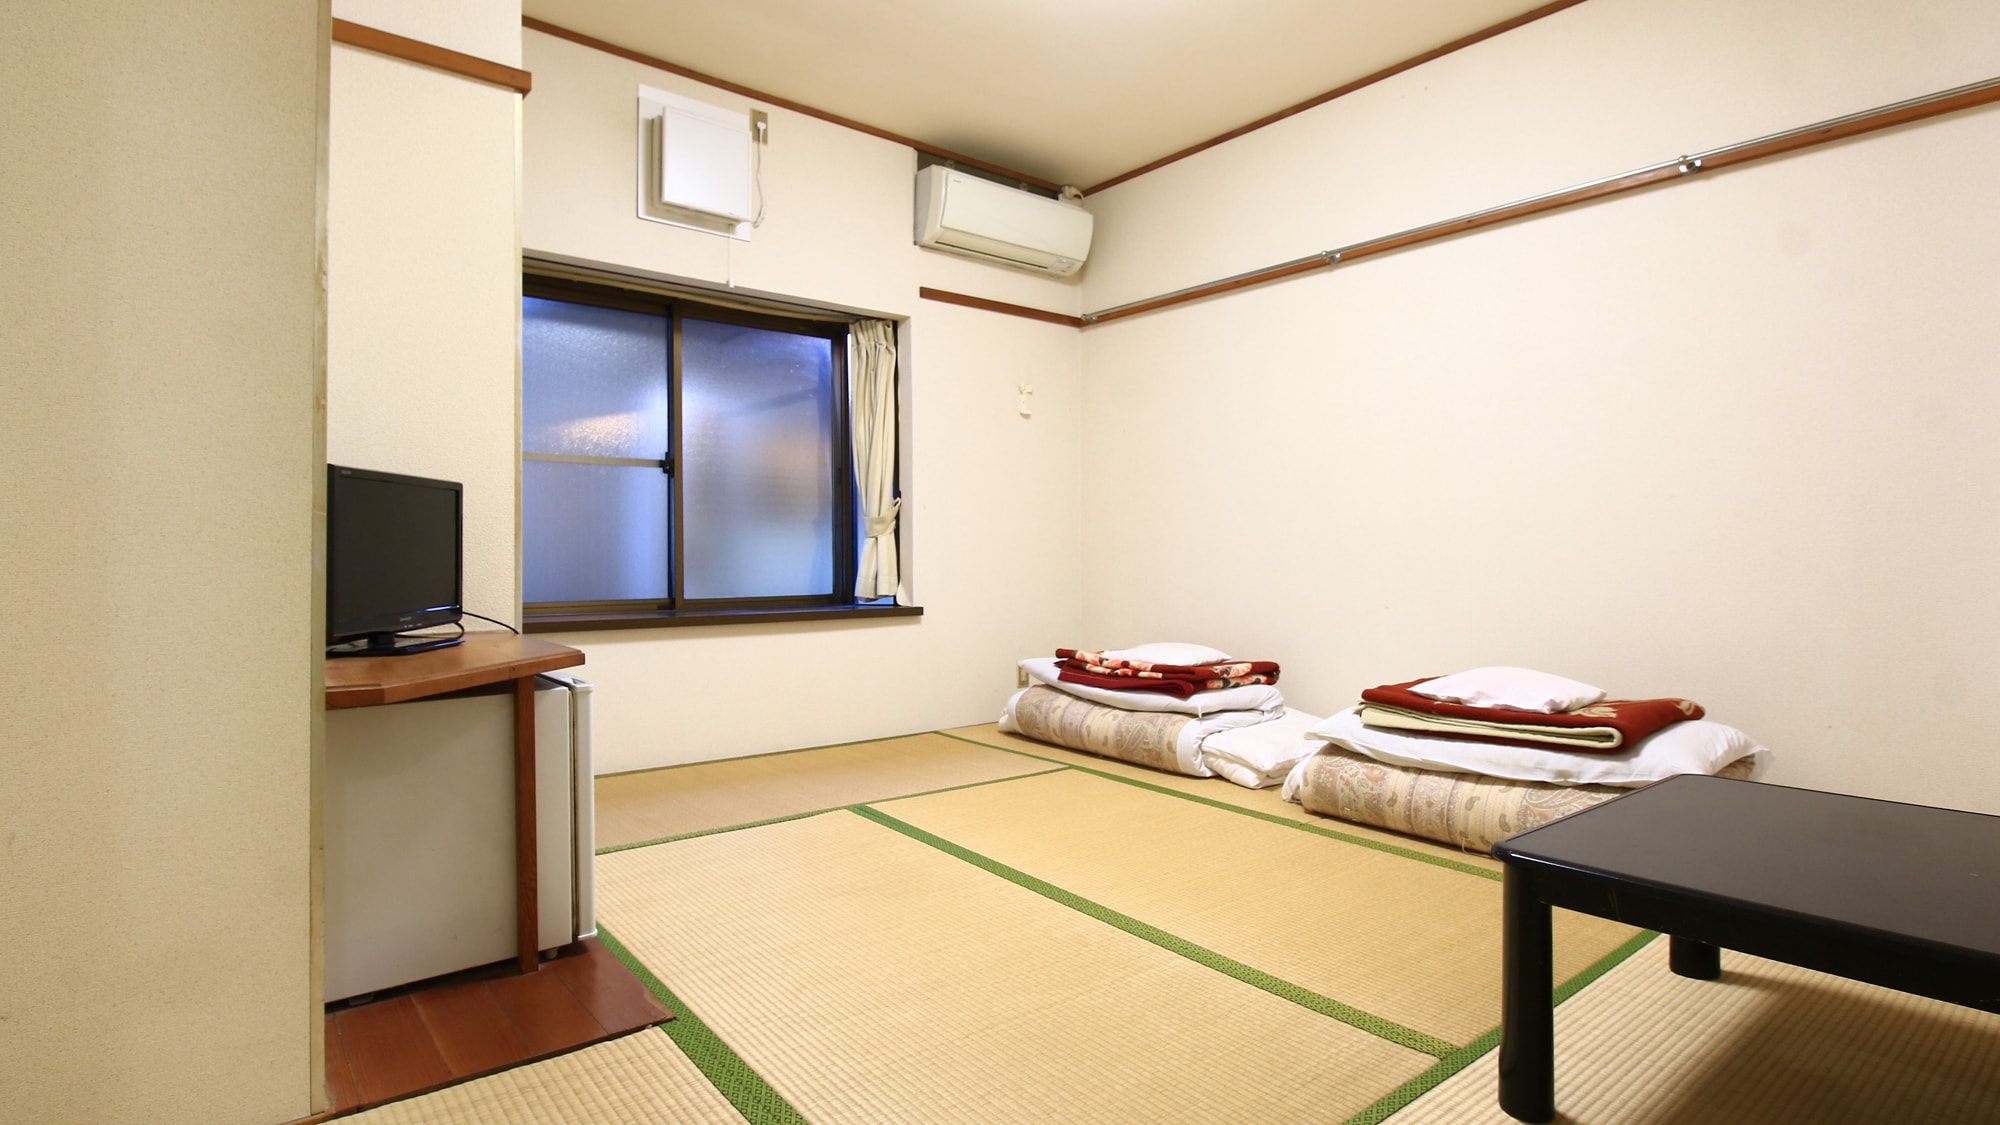 [Room 2] Japanese style room 7.5 tatami mats